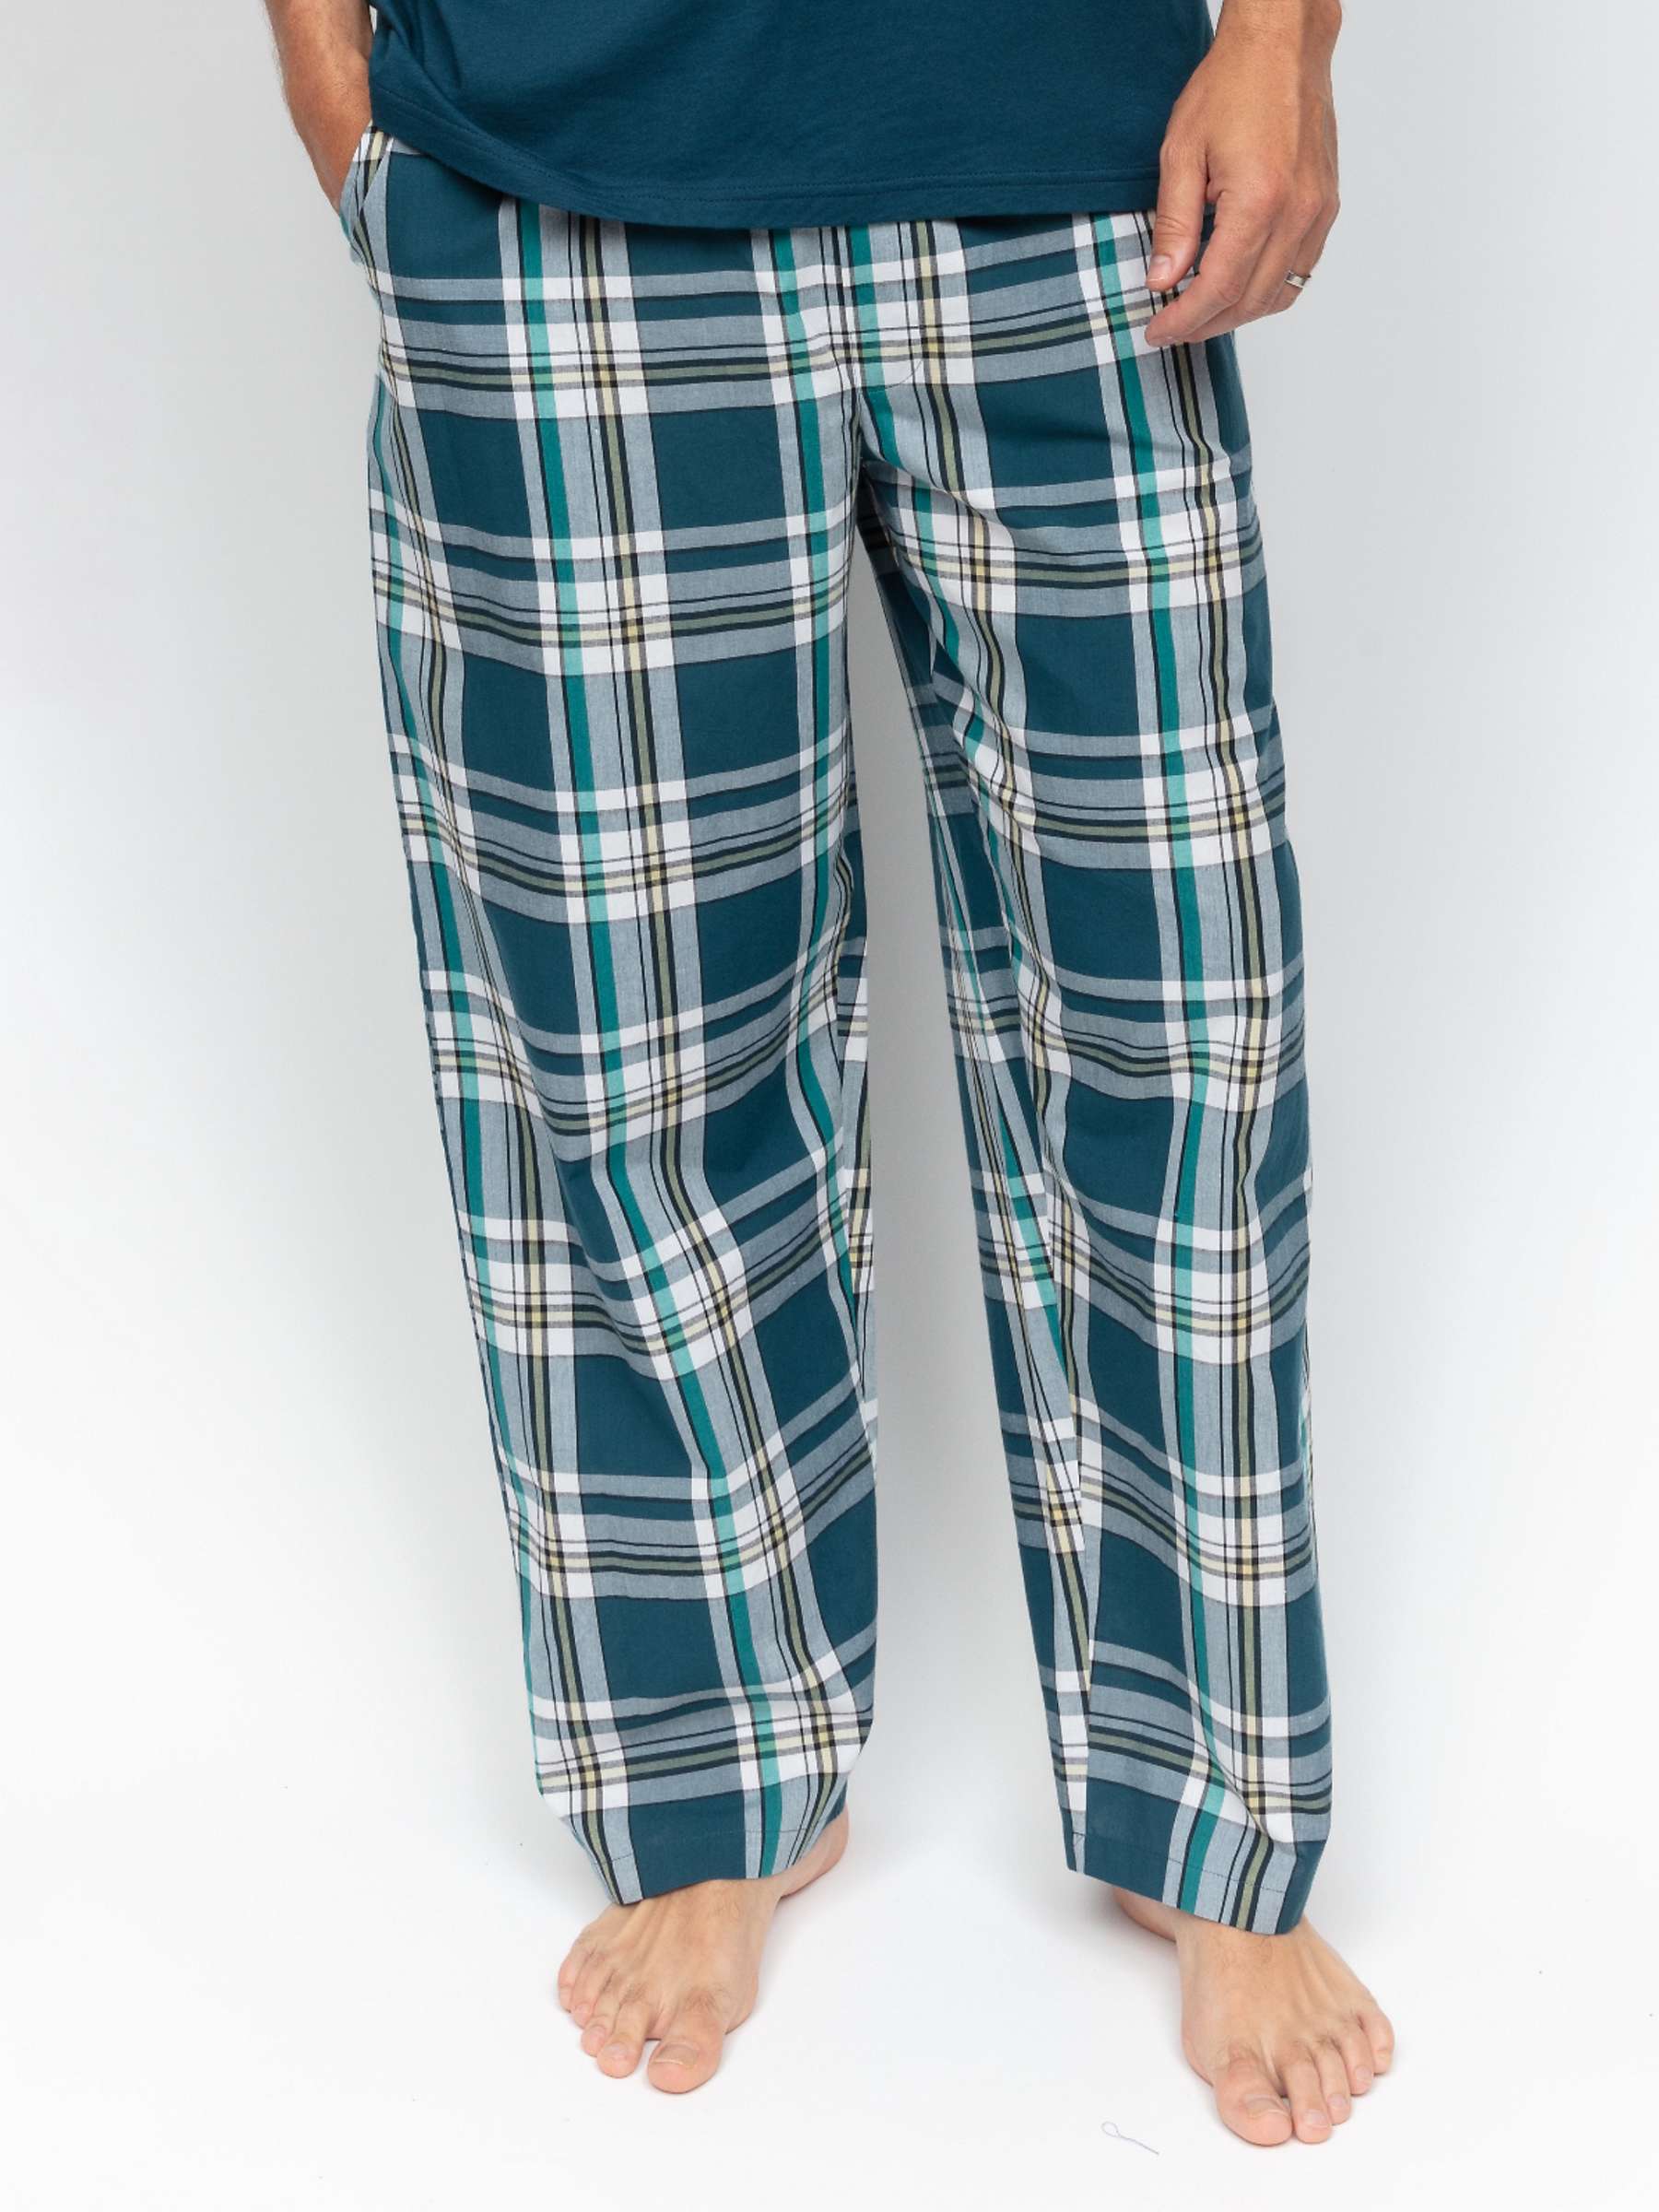 Buy Cyberjammies Check Pyjama Bottoms, Teal Online at johnlewis.com